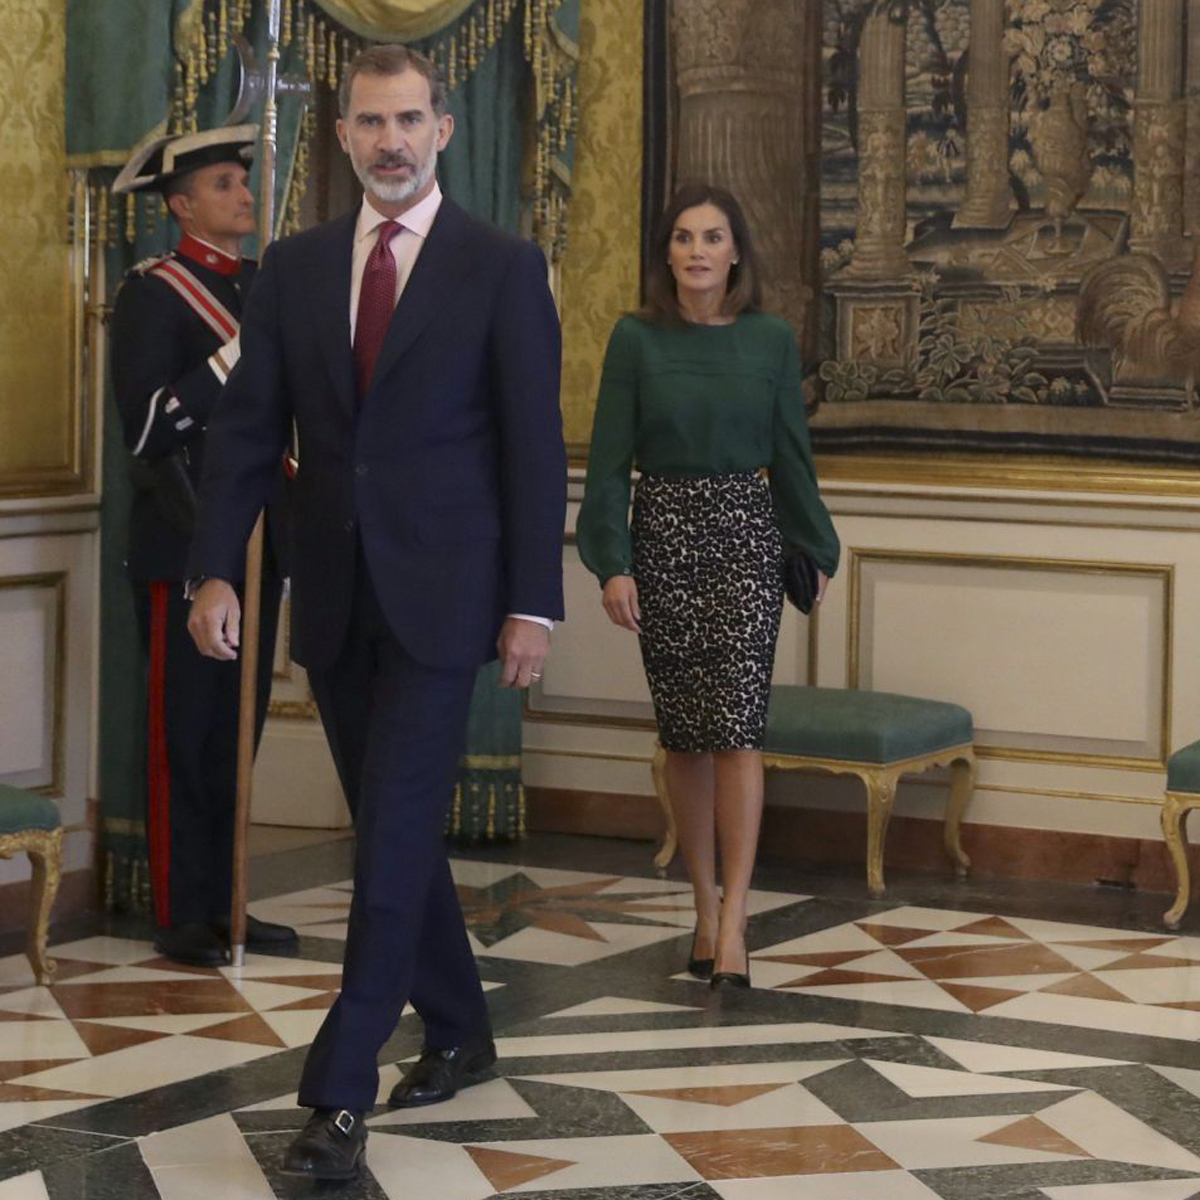 La reina Letizia y Felipe VI